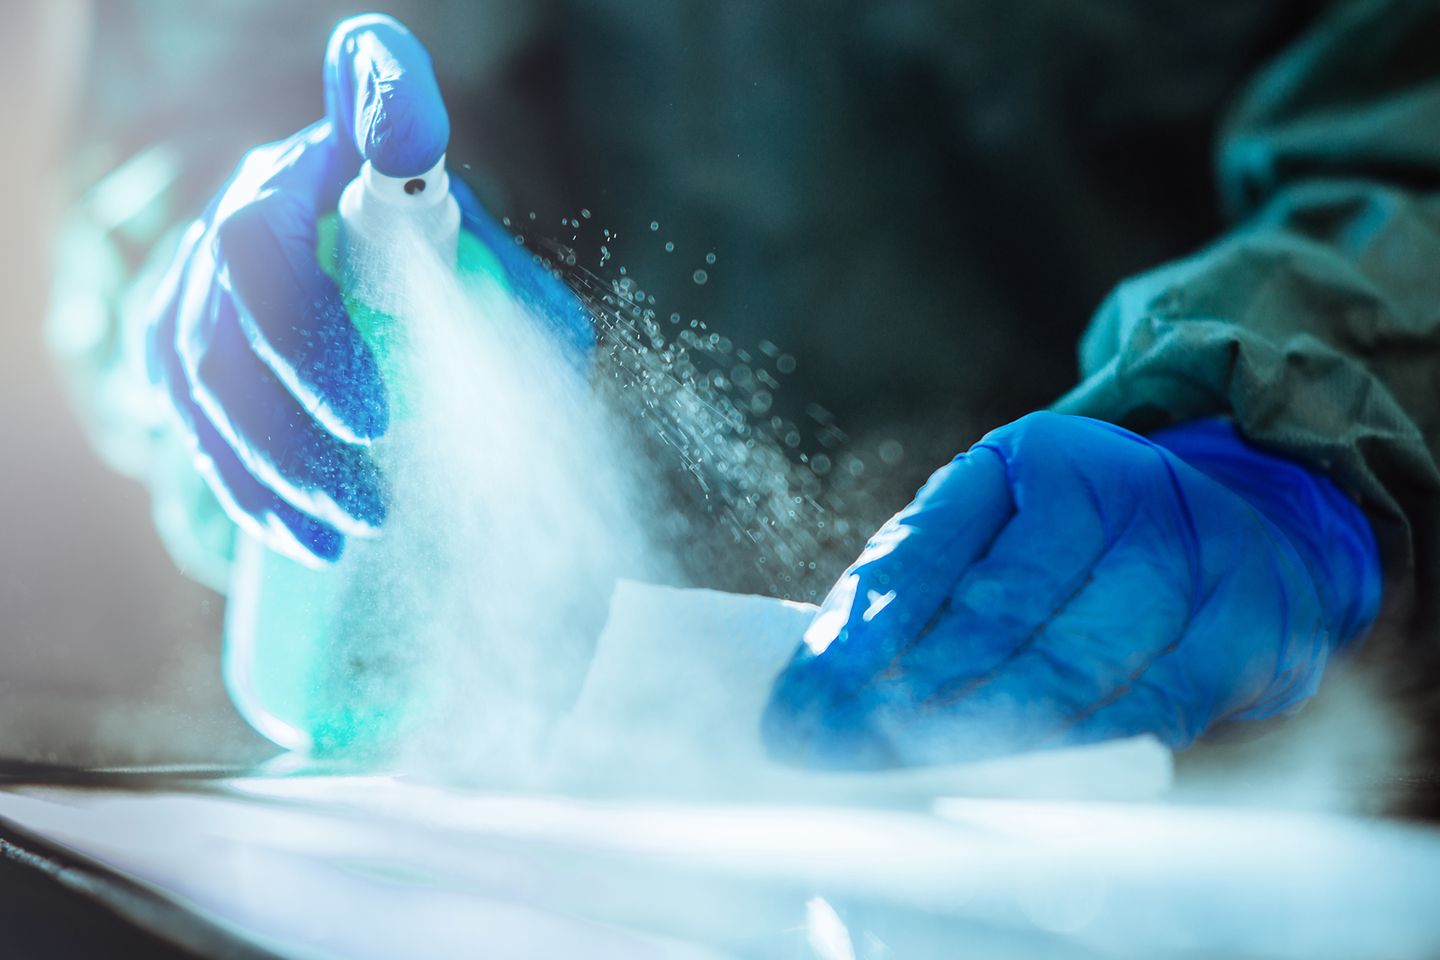 Nahaufnahme zweier Hände in blauen Gummihandschuhen mit Desinfektionsmittel